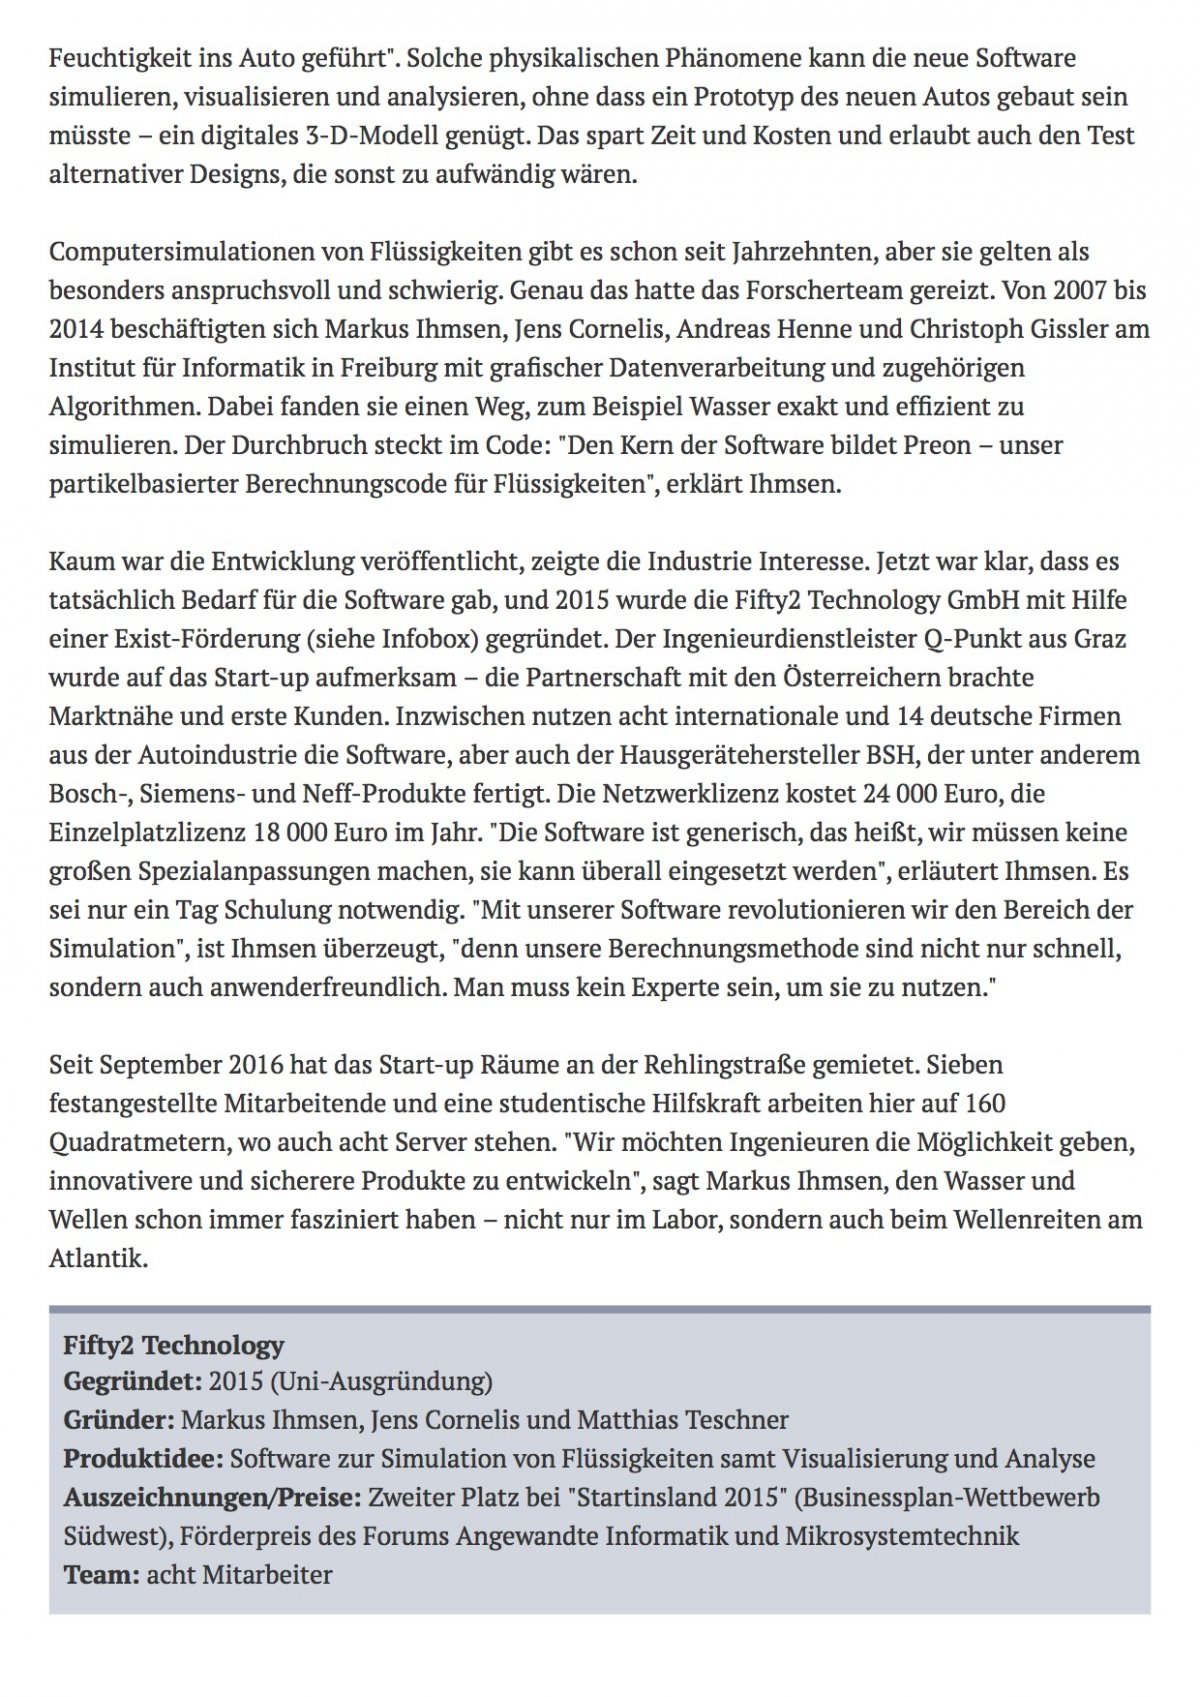 Pressebericht zum Start-up Fifty2 Technology, Badische Zeitung, Seite 2